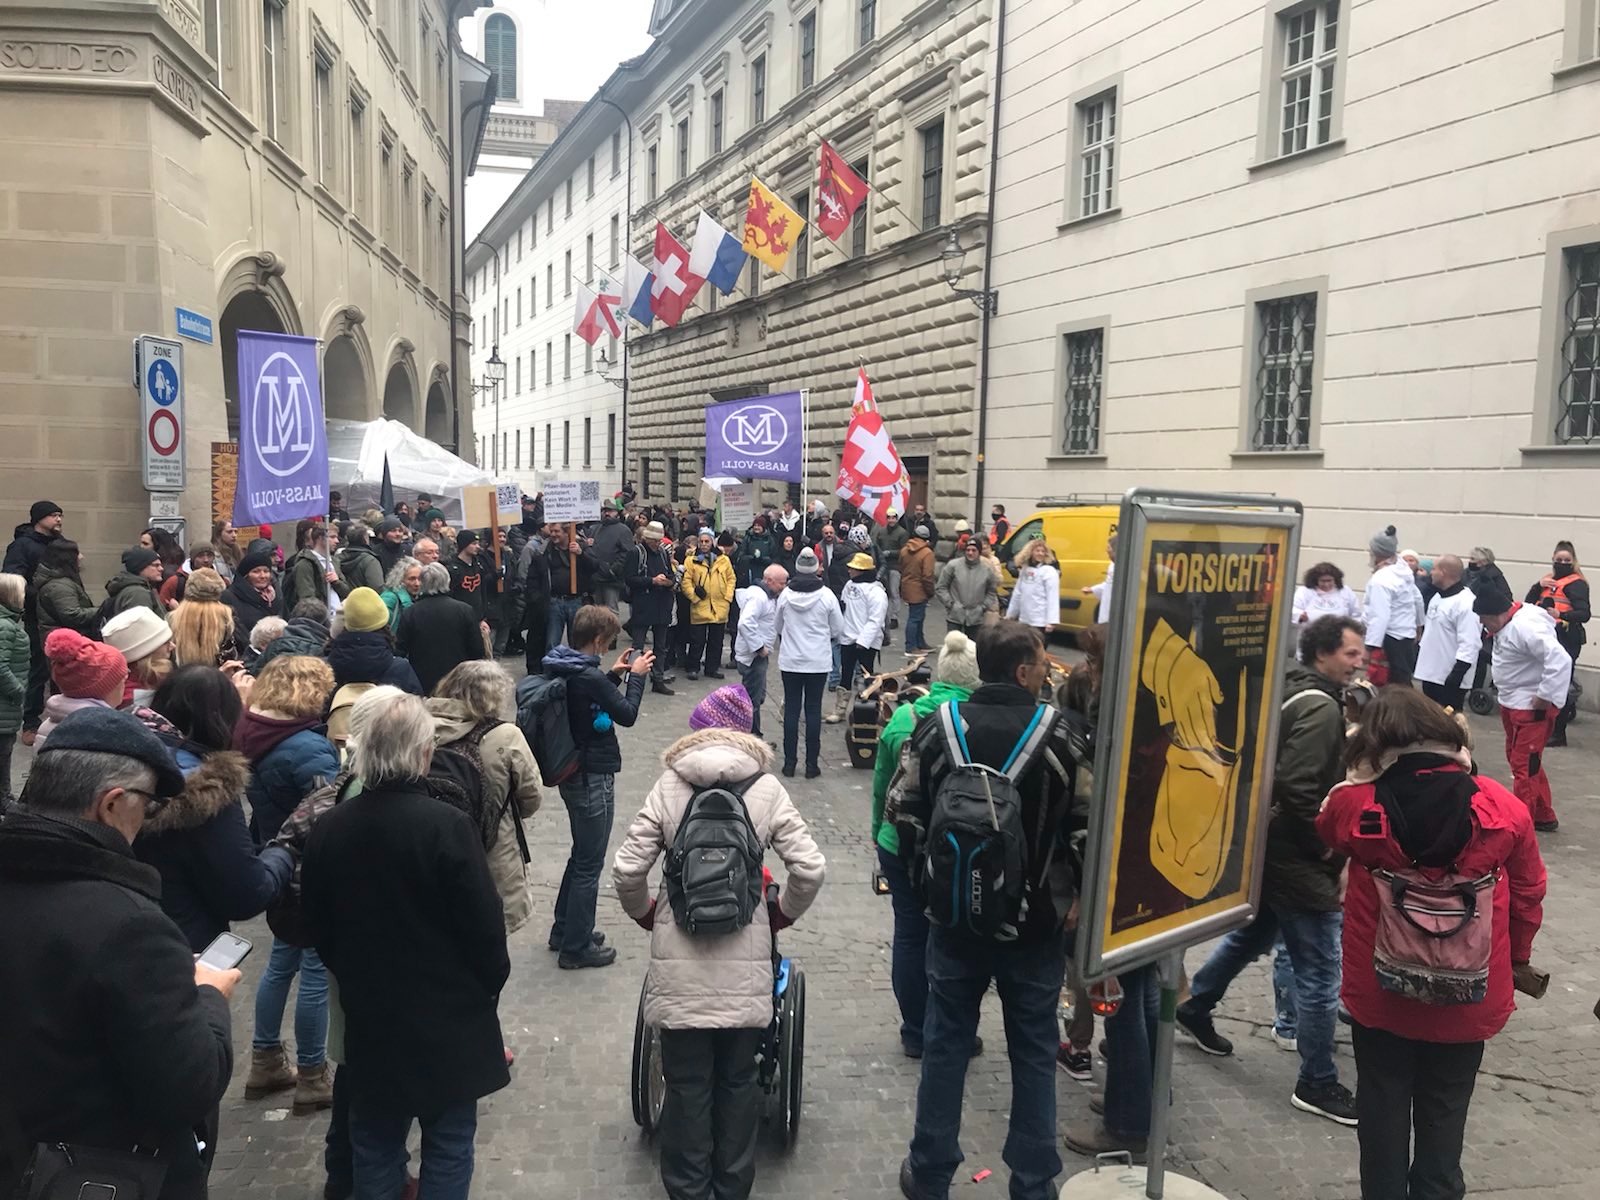 Rund 100 Personen demonstrieren vor dem Regierungsgebäude Luzern gegen die Zertifikatspflicht im Gesundheitswesen.